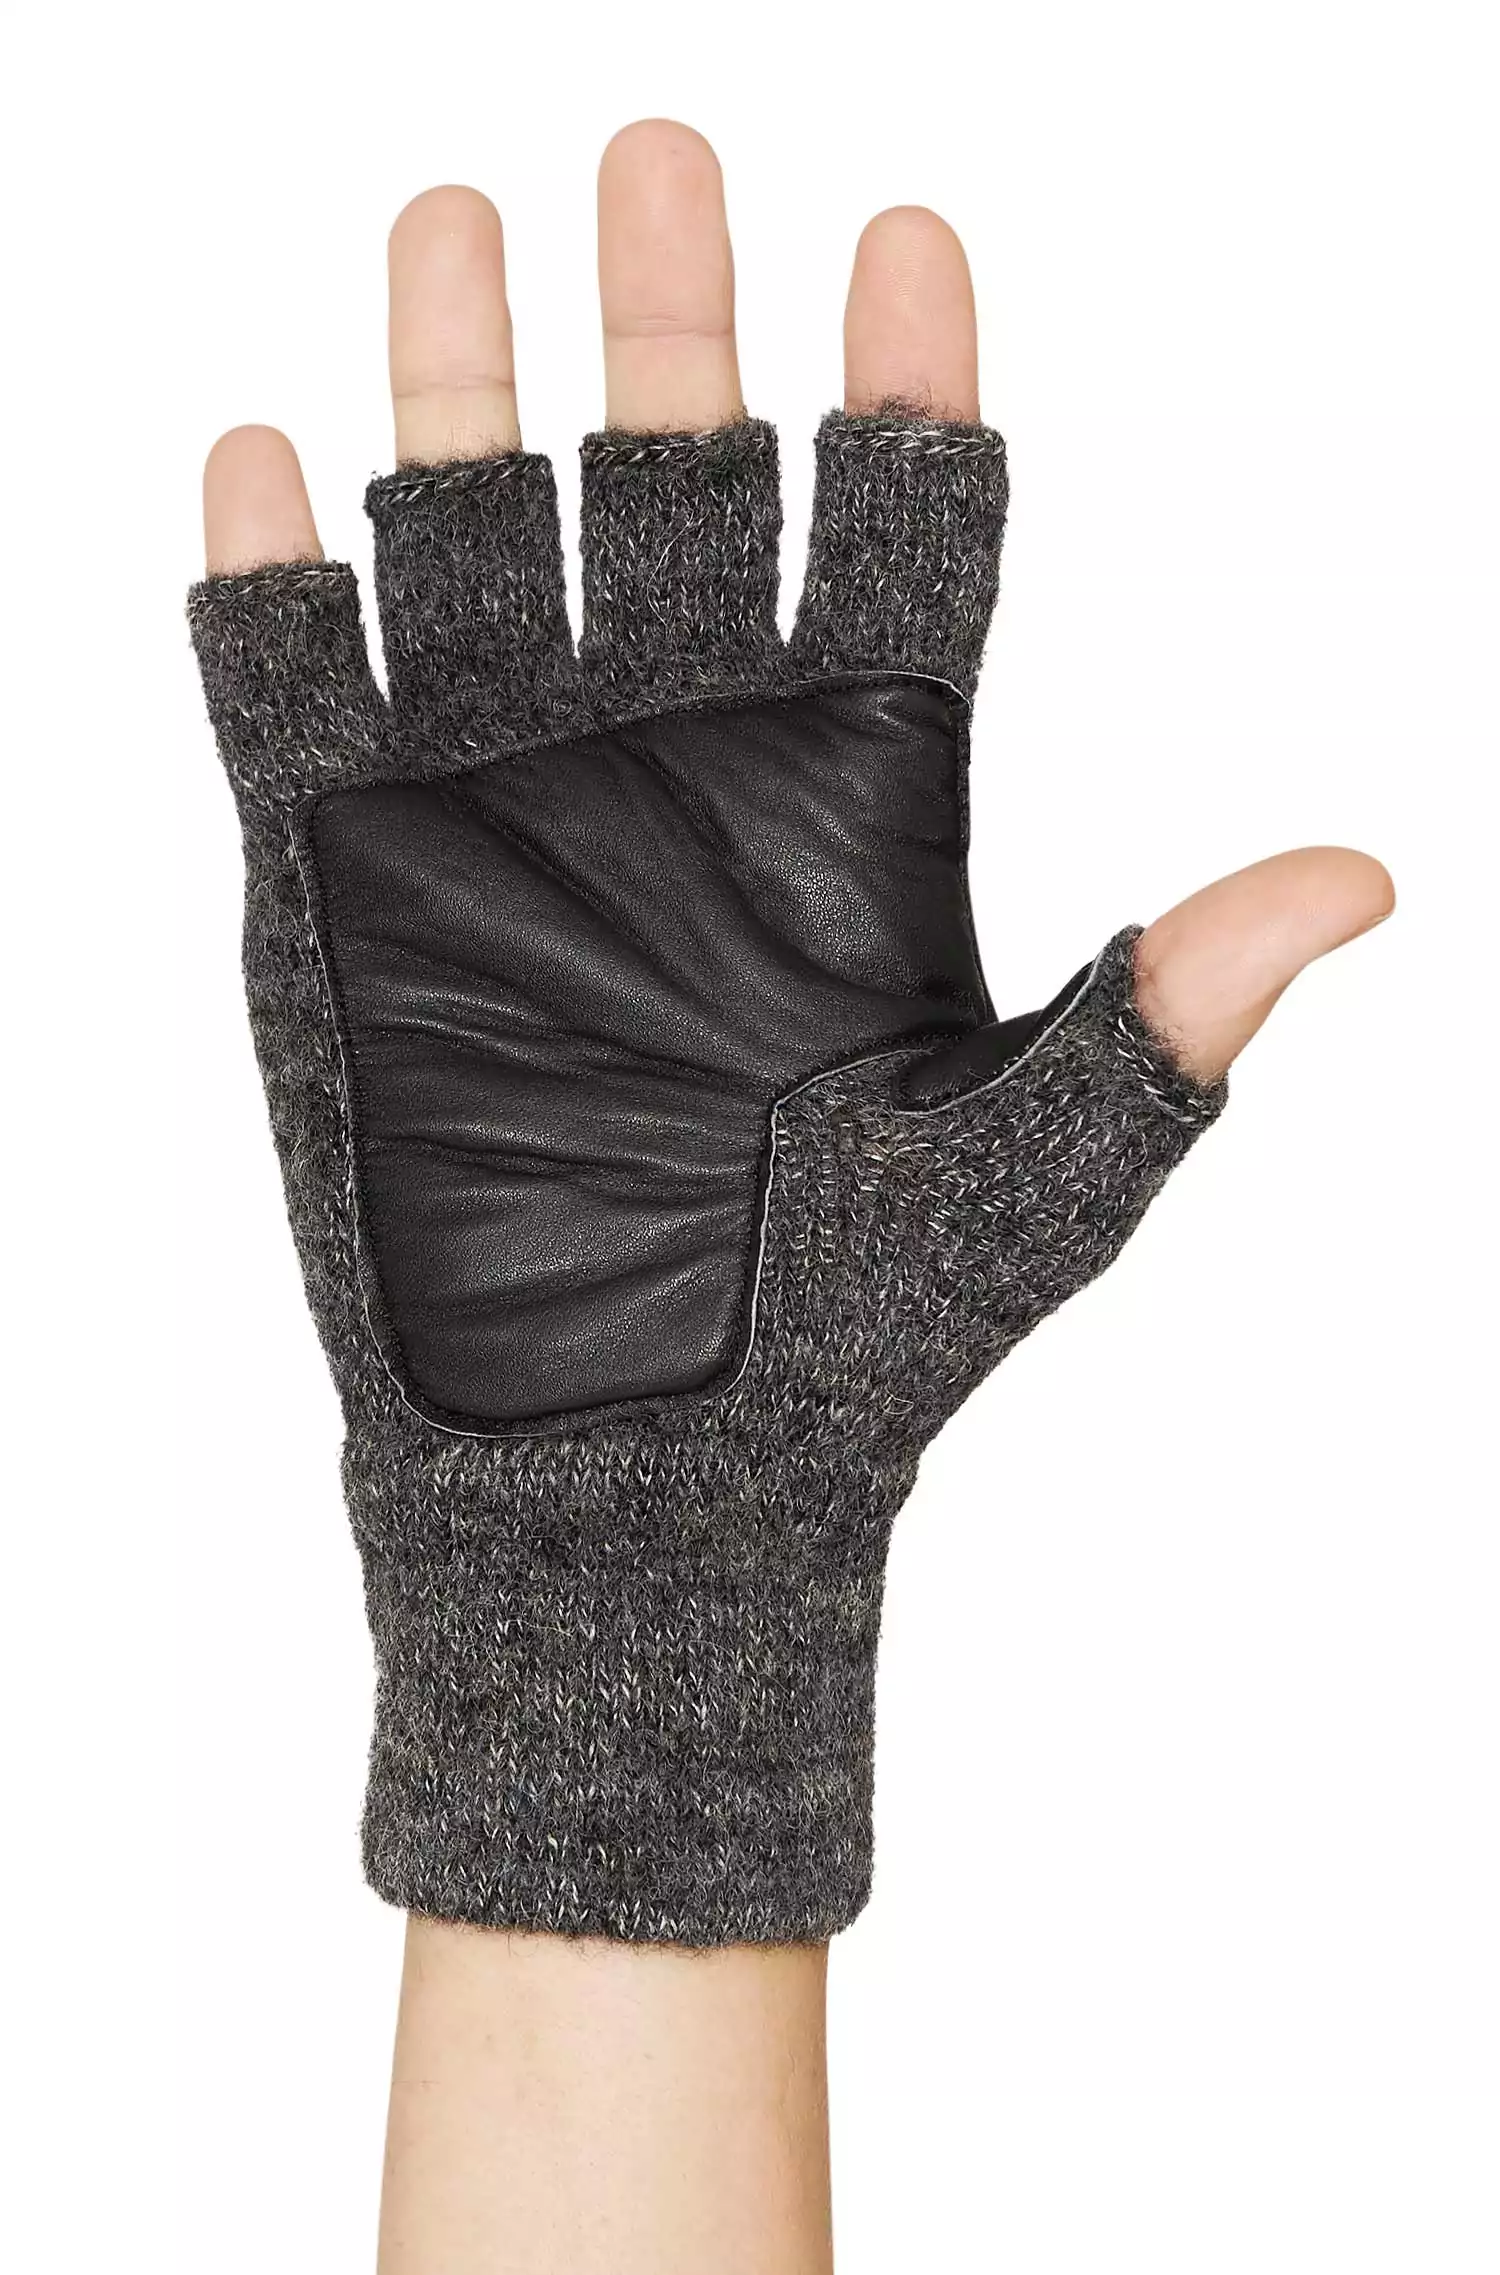 Ladies Fingerless Leather Gel Padded Palm Gloves - Hugger Gloves